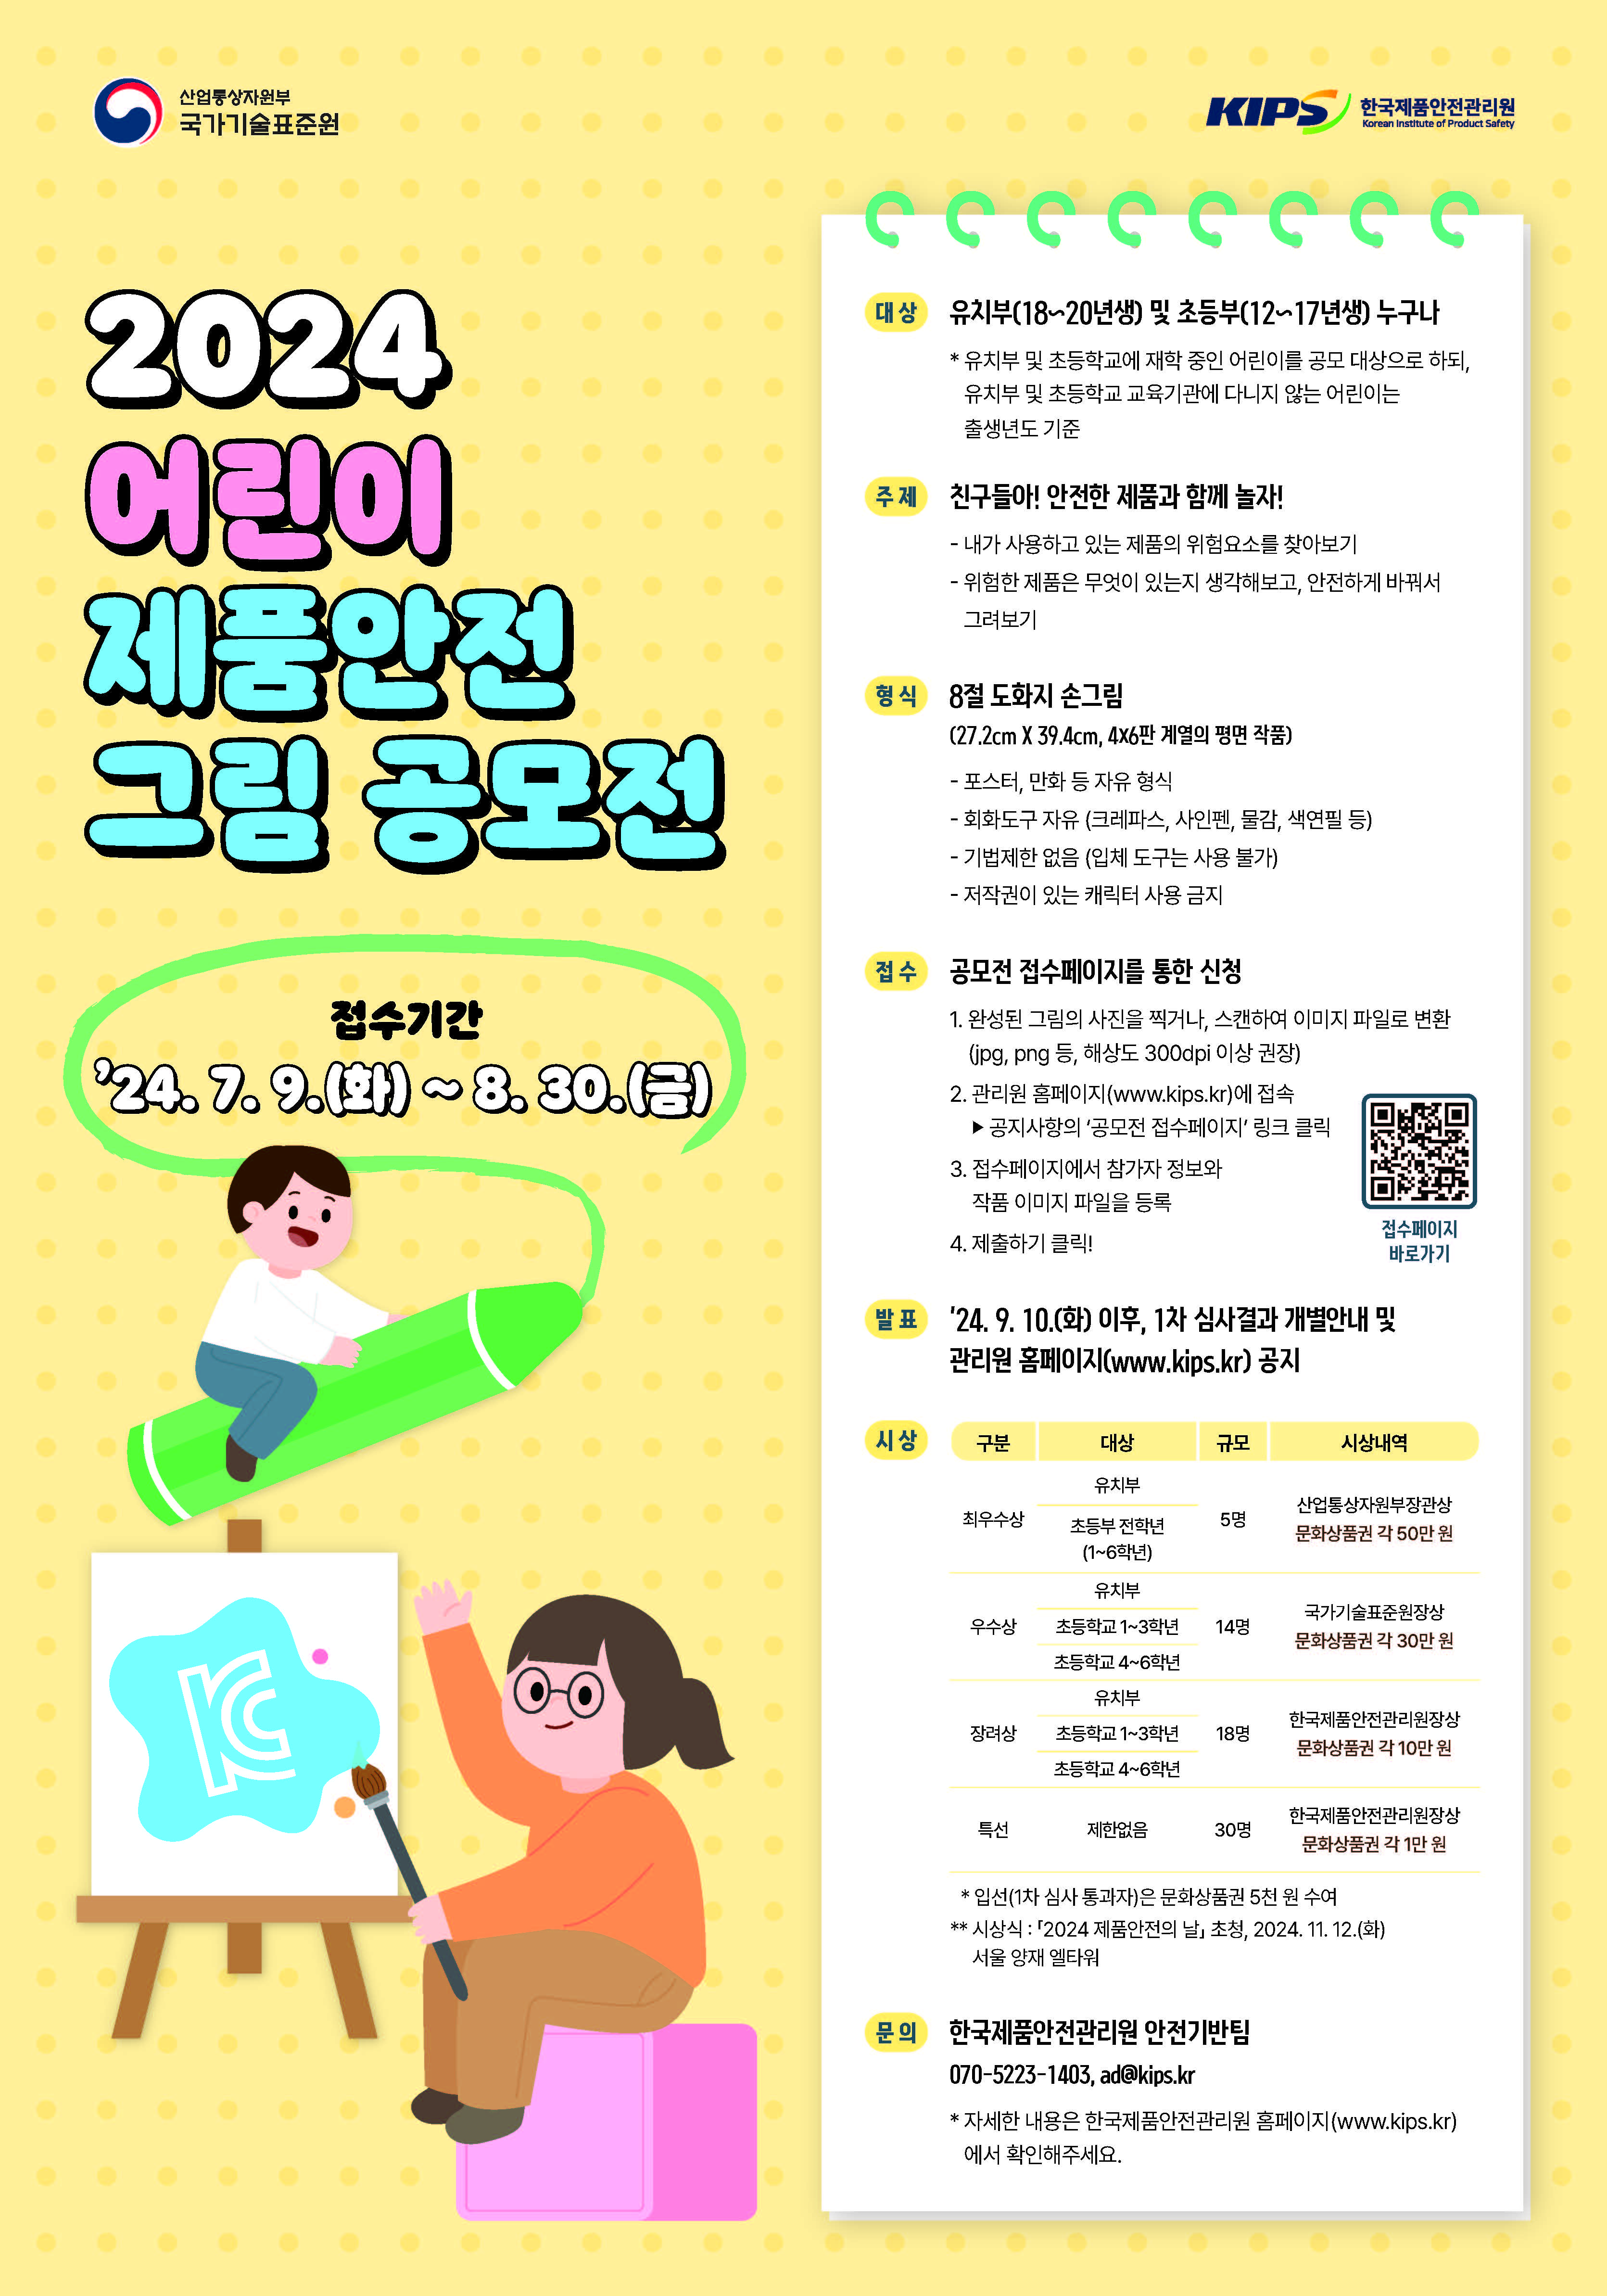 「2024 어린이 제품안전 그림공모전」 홍보